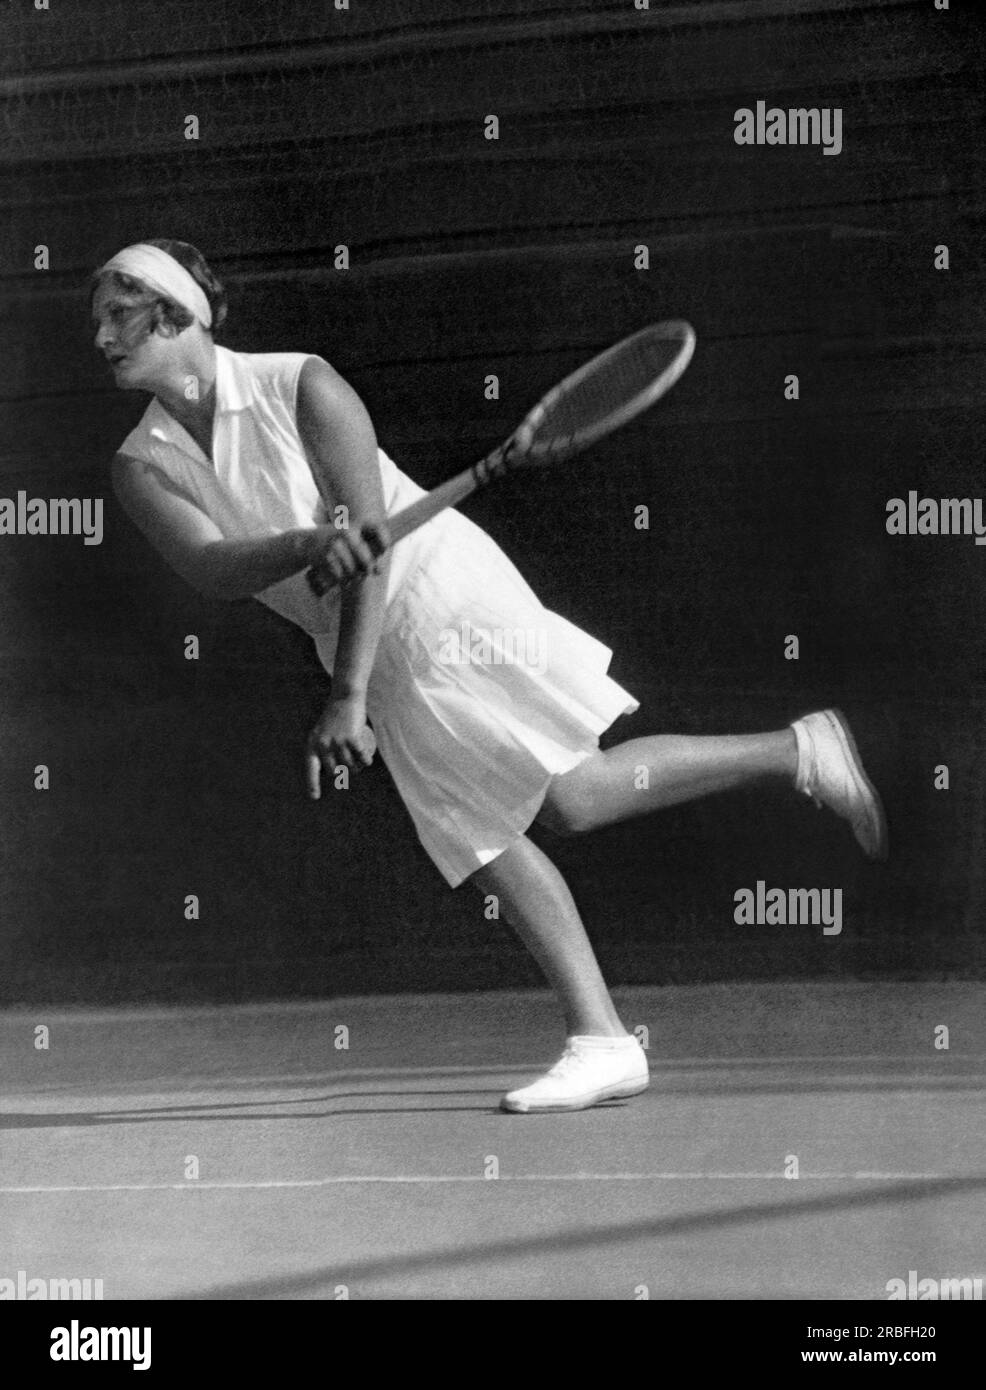 Angleterre : c. 1927 joueuse de tennis britannique, médaillée d'or olympique et championne de Wimbledom Kathleen McKane Godfree retournant une balle sur le court de tennis. Banque D'Images